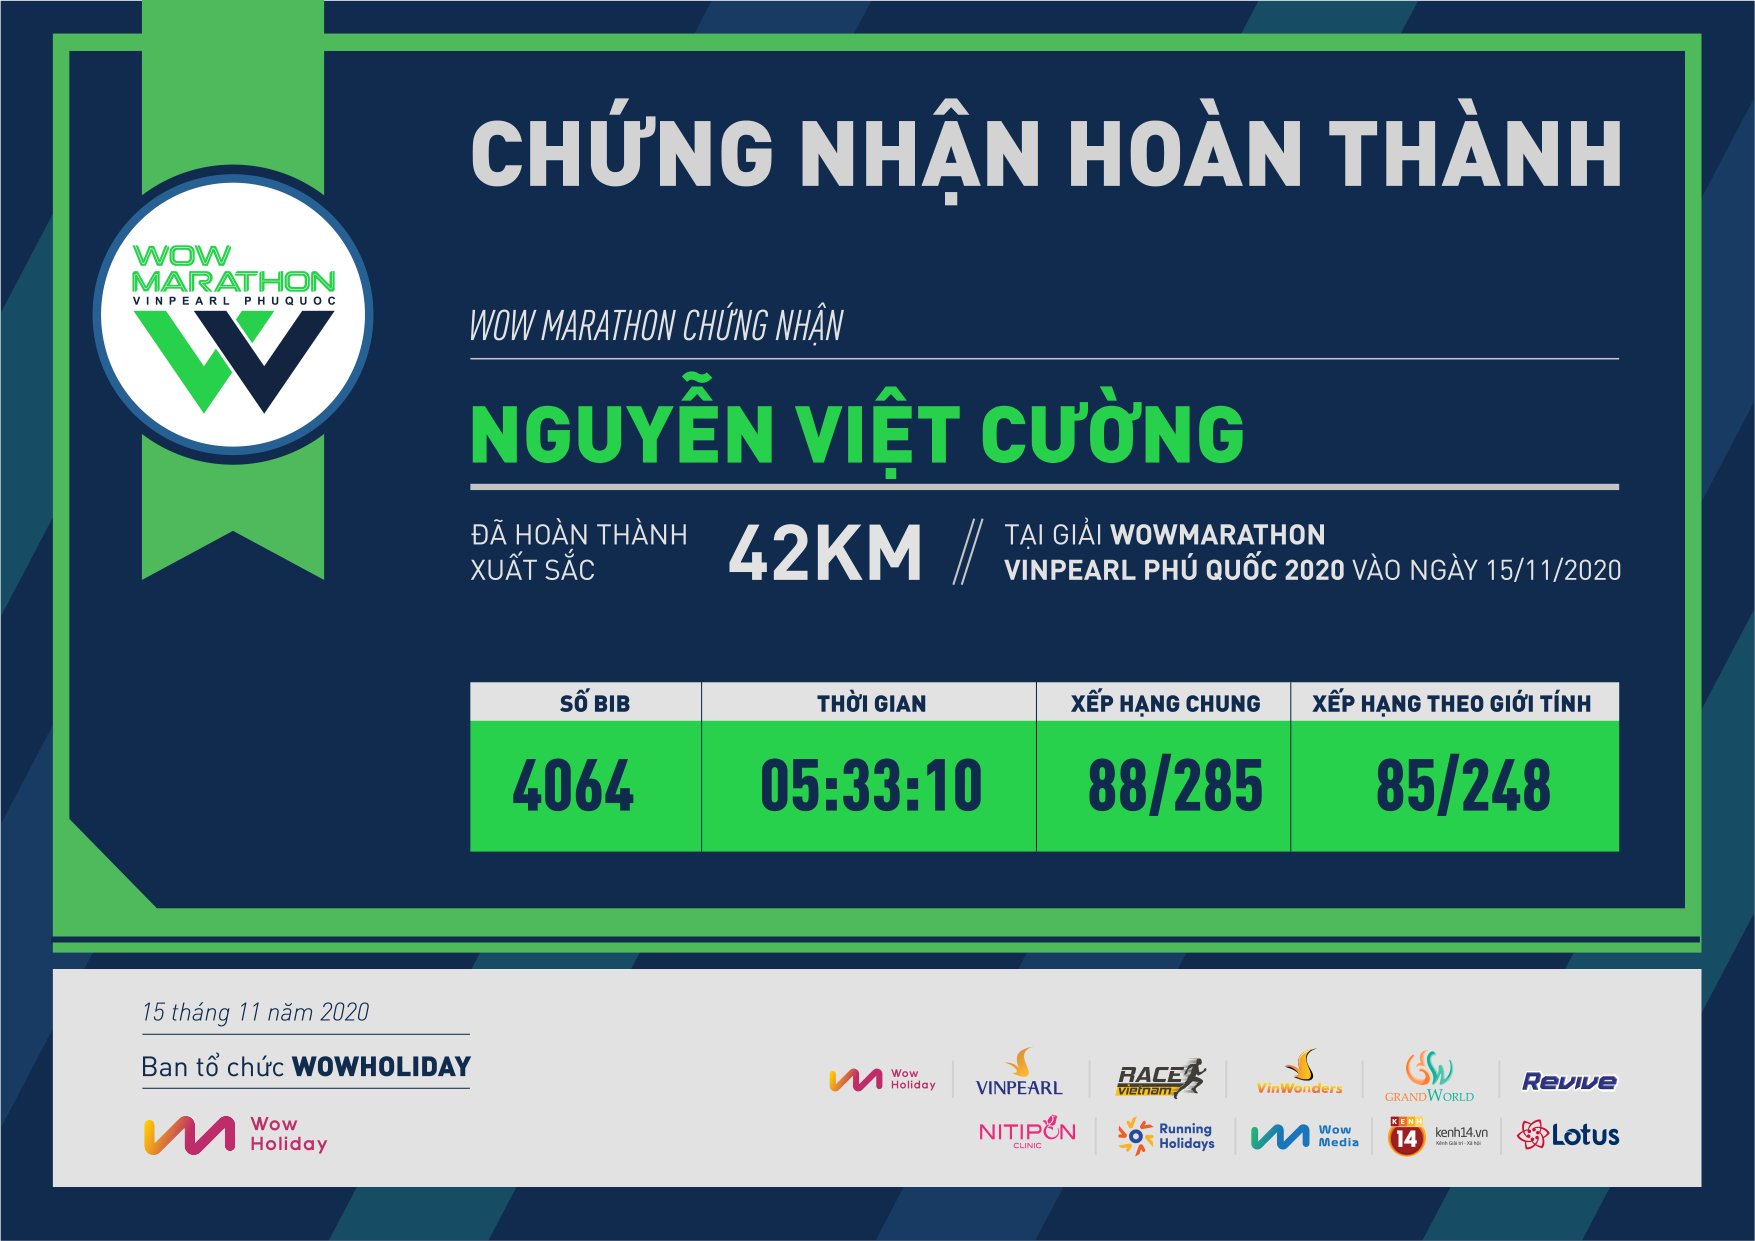 4064 - Nguyễn Việt Cường